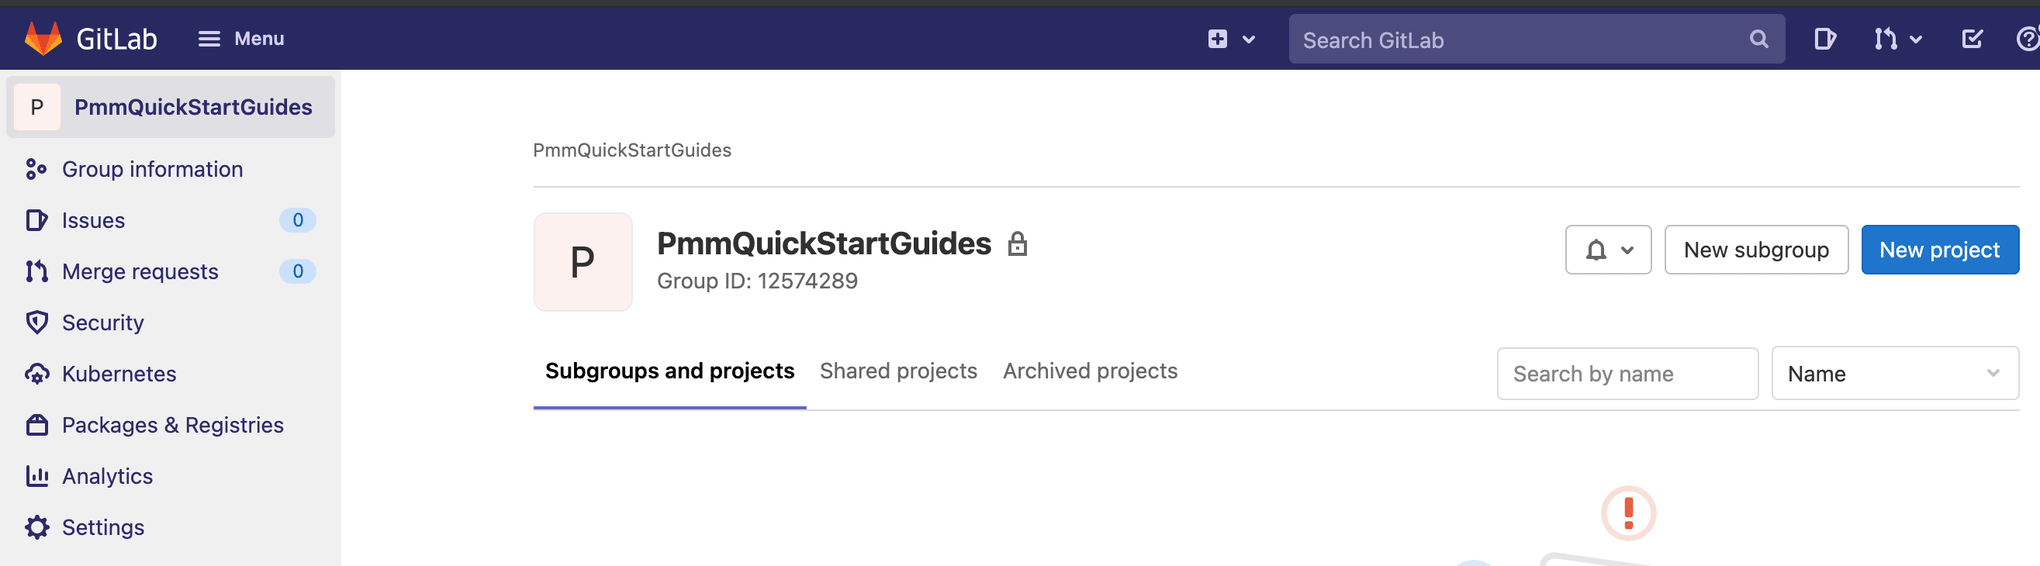 Navegar para crear un "Nuevo proyecto" en GitLab